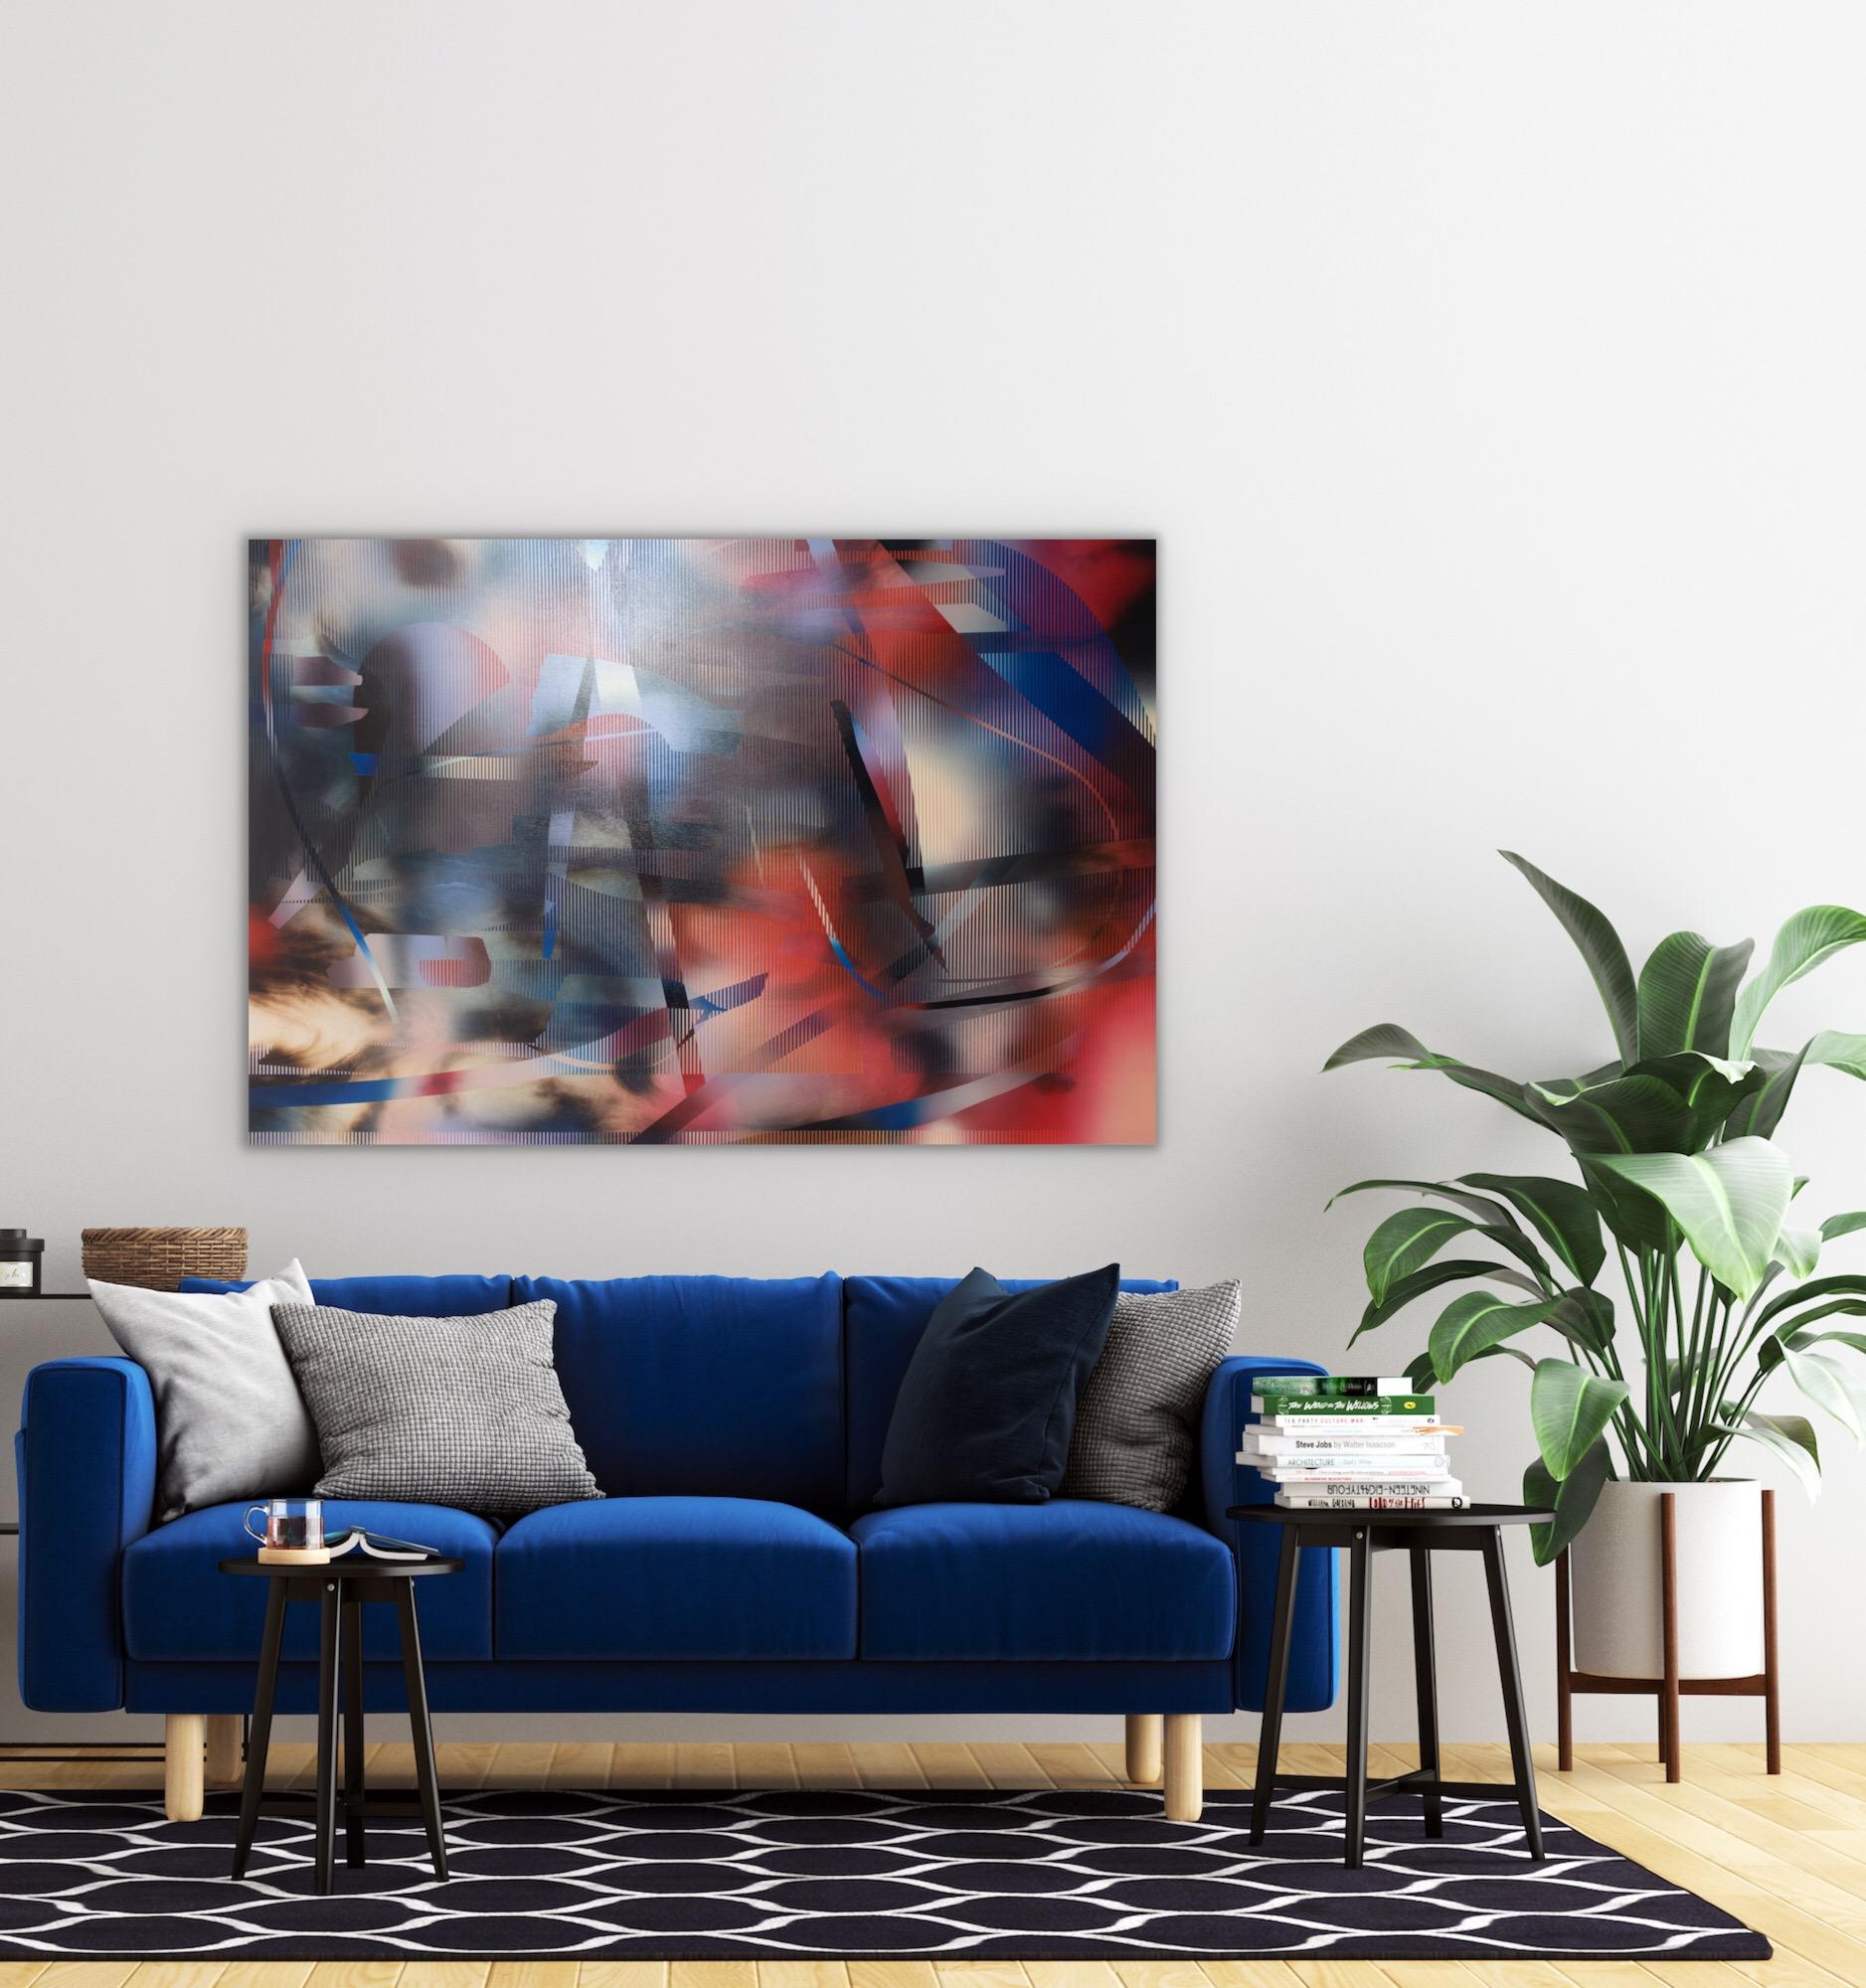 d'Ombr 6 (peinture à grille rouge géométrique abstraite rayée et gestuelle bleu hard-edge) - Gris Abstract Painting par Melisa Taylor Metzger